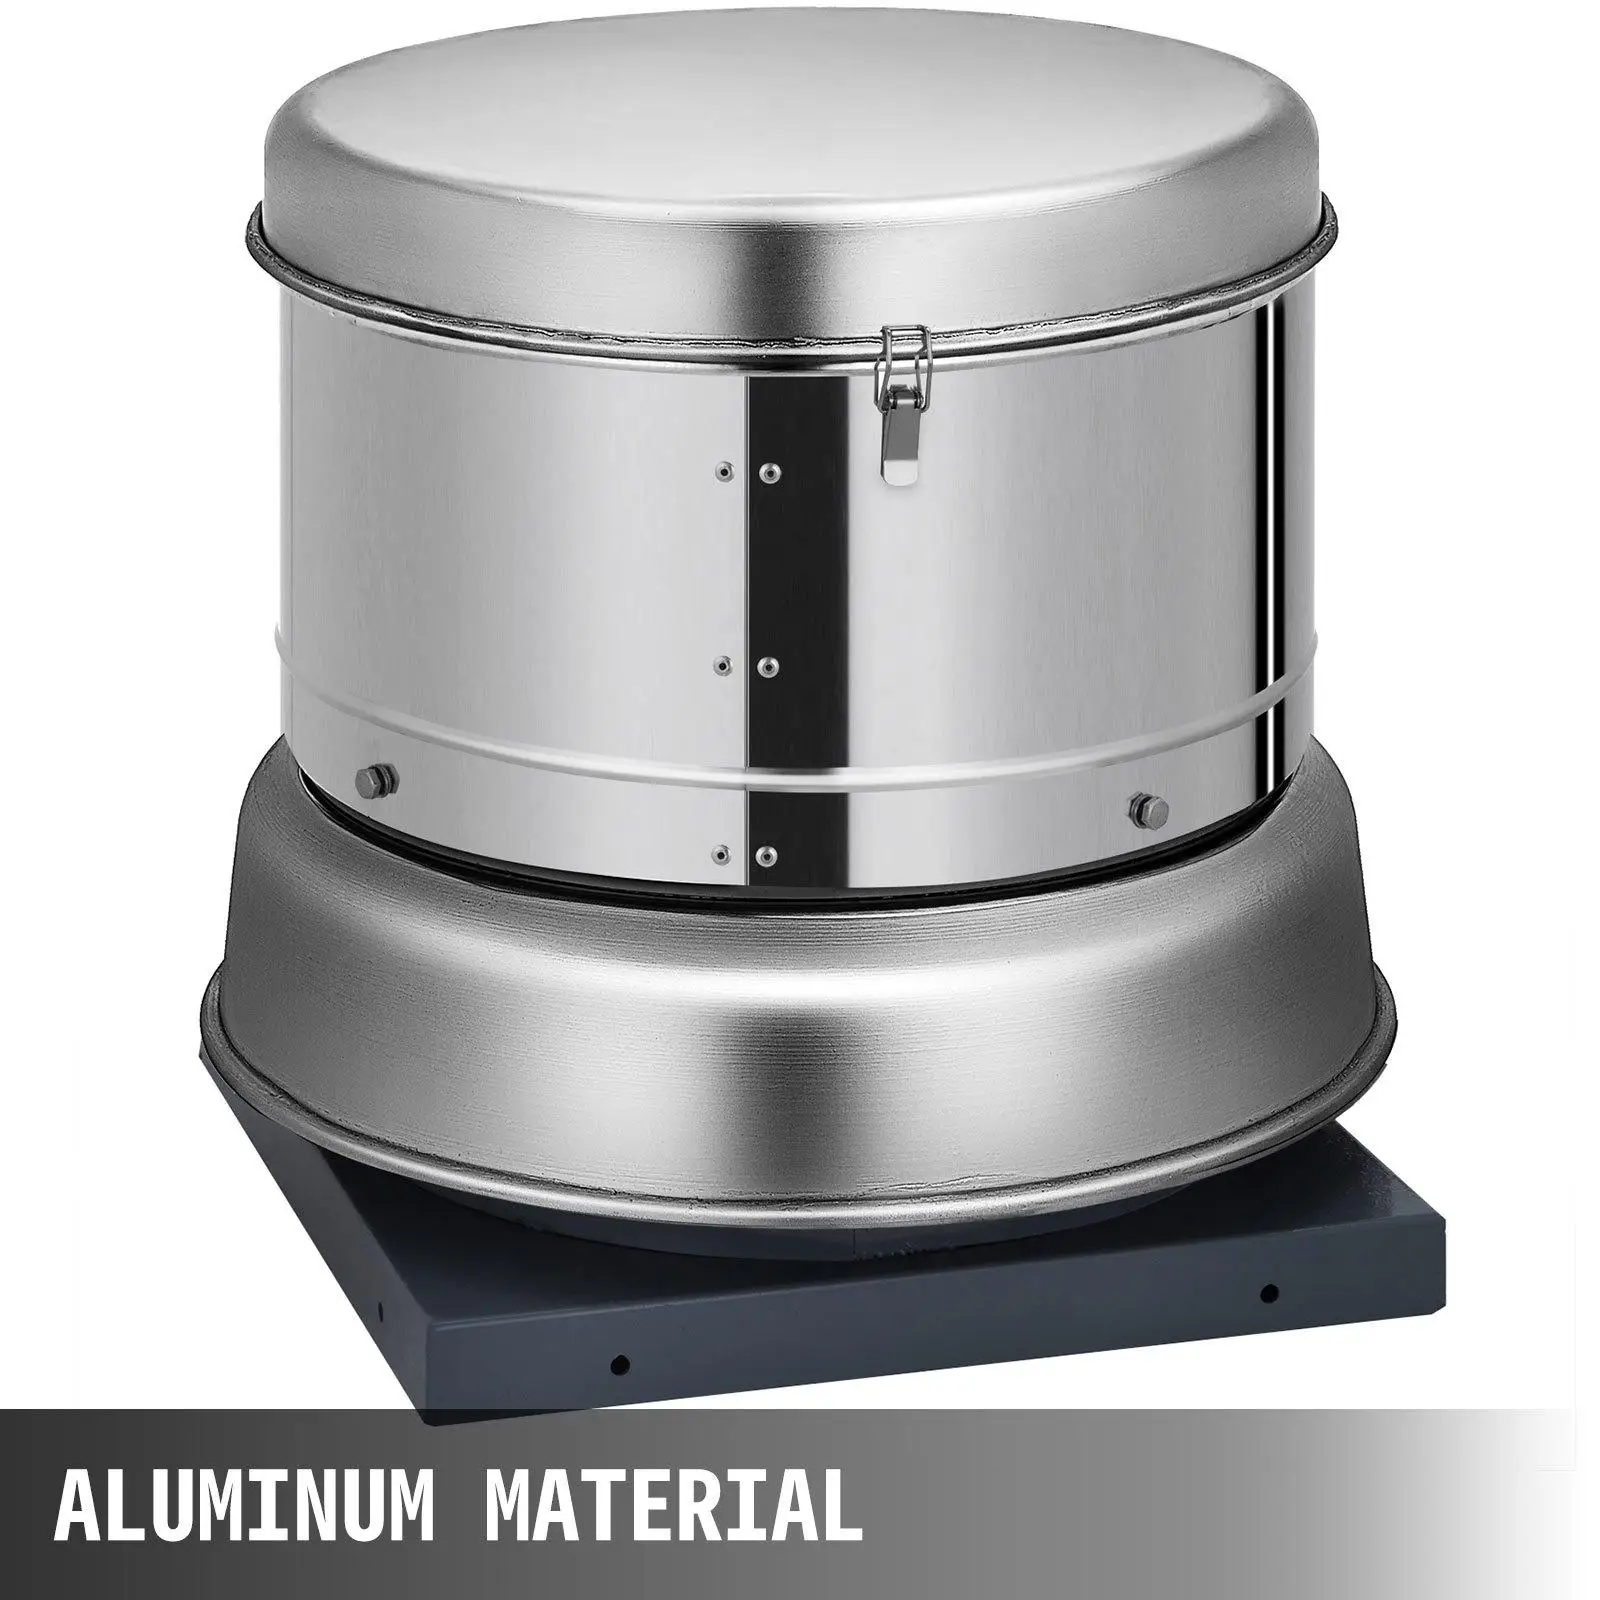 Aluminum material